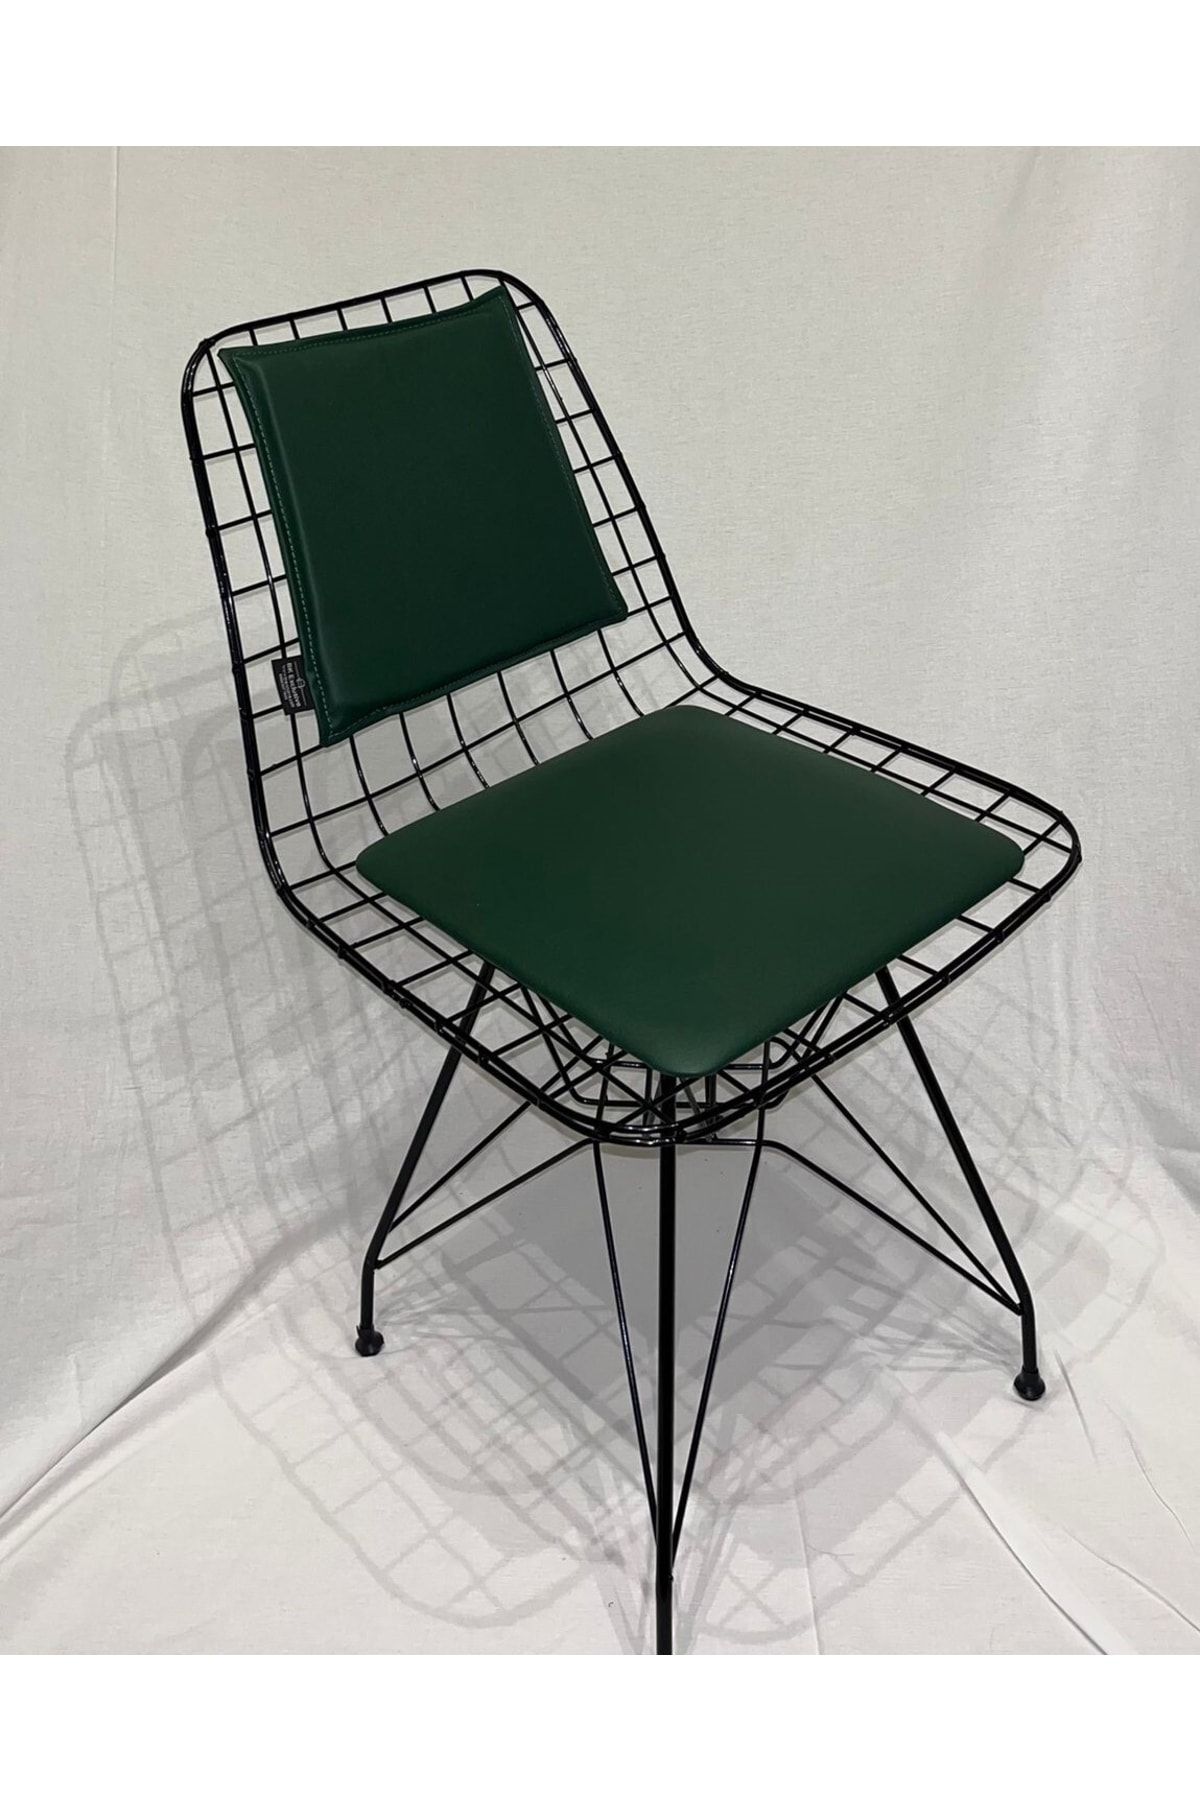 BK exclusive Tel Sandalye Minder Seti ( Oturma Ve Sırt Minderi) , (SANDALYE DAHİL DEĞİLDİR)